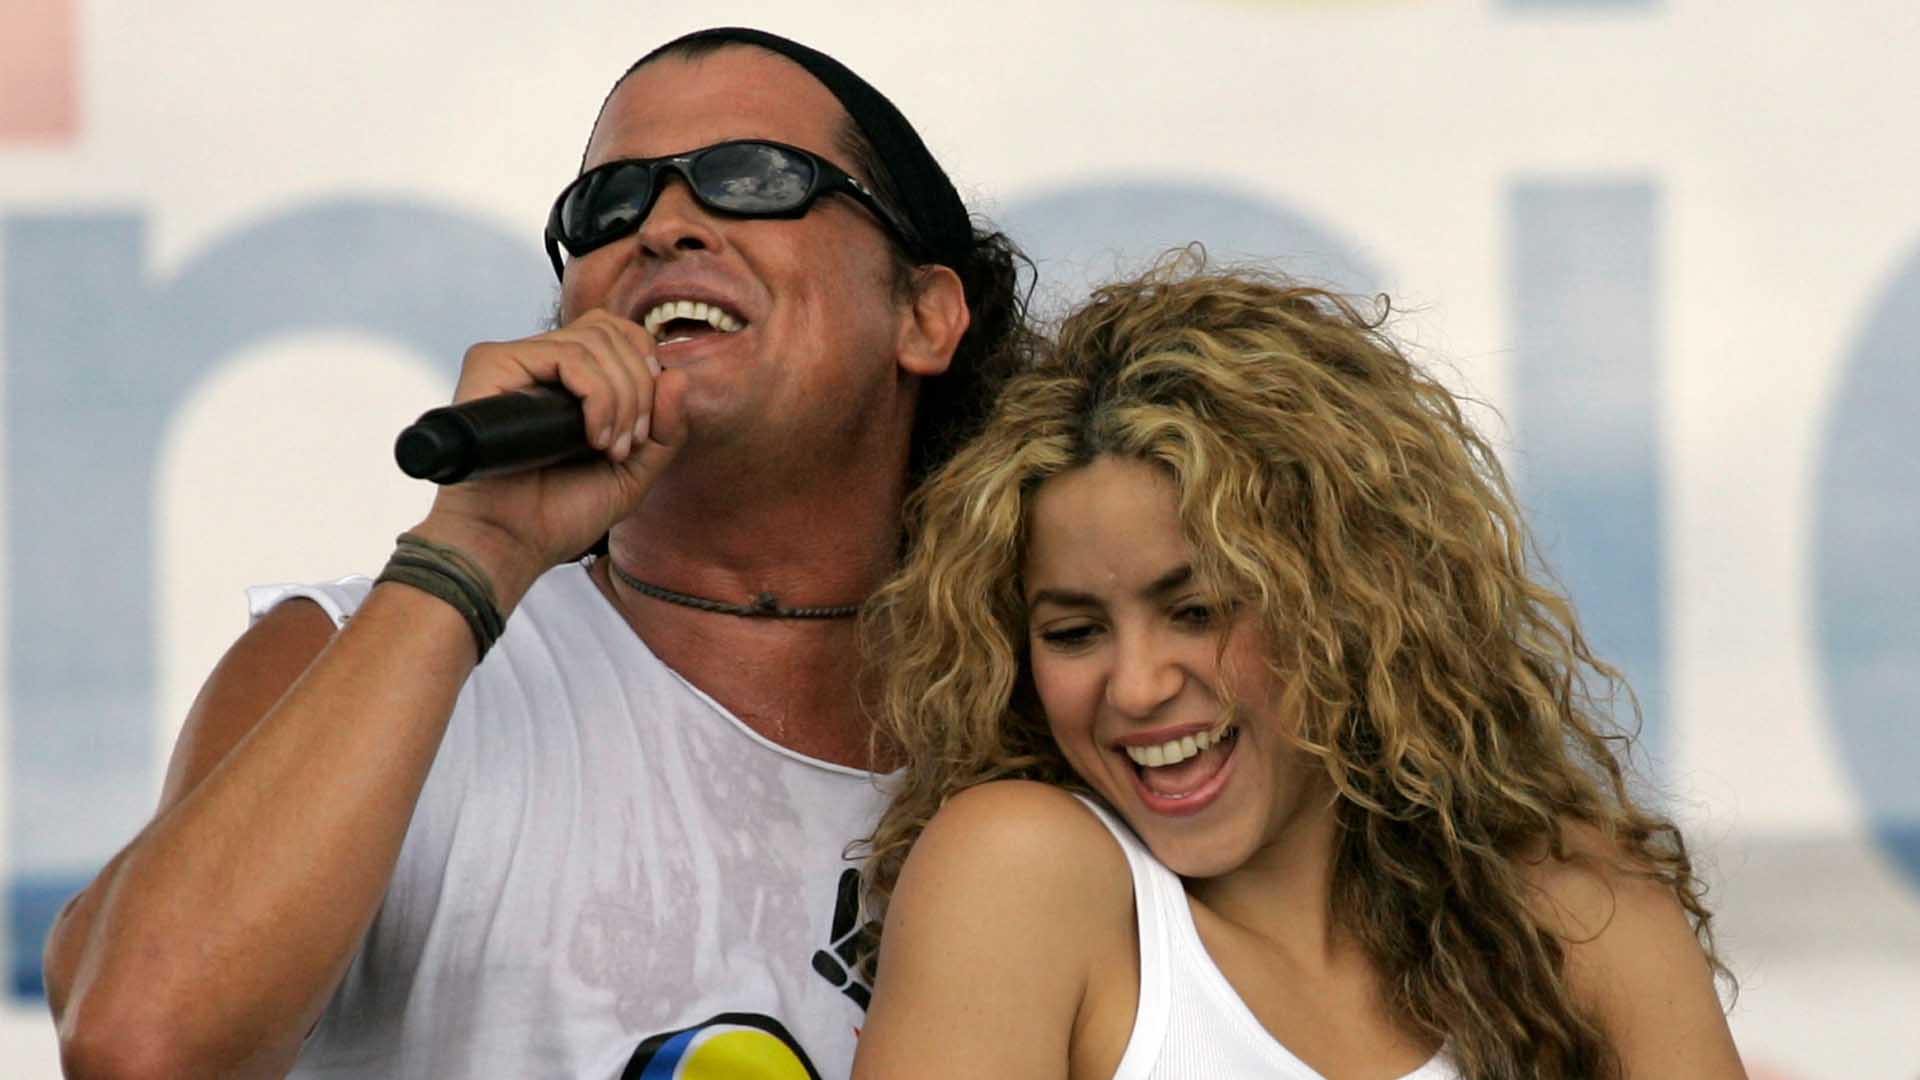 Desestimada la denuncia de plagio contra Shakira y Carlos Vives por la canción 'La bicicleta'